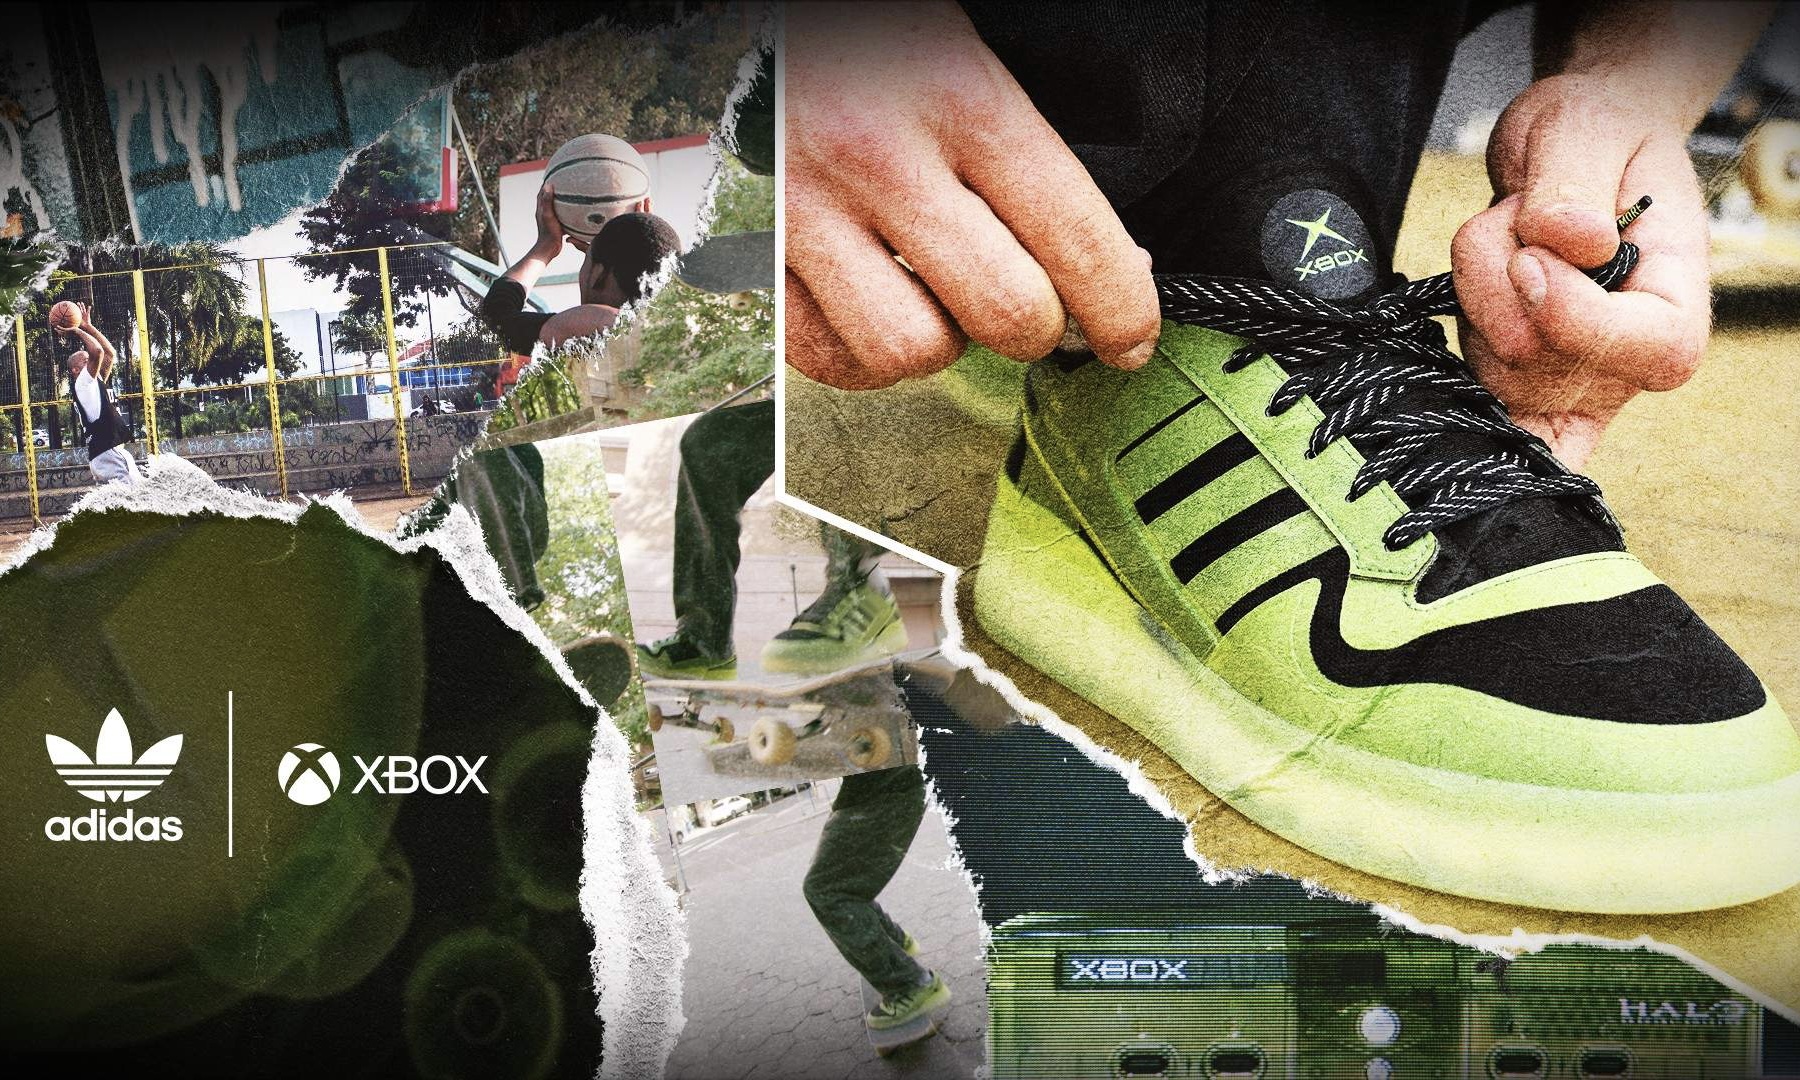 Xbox x adidas Forum Tech Boost 20 周年合作鞋款释出